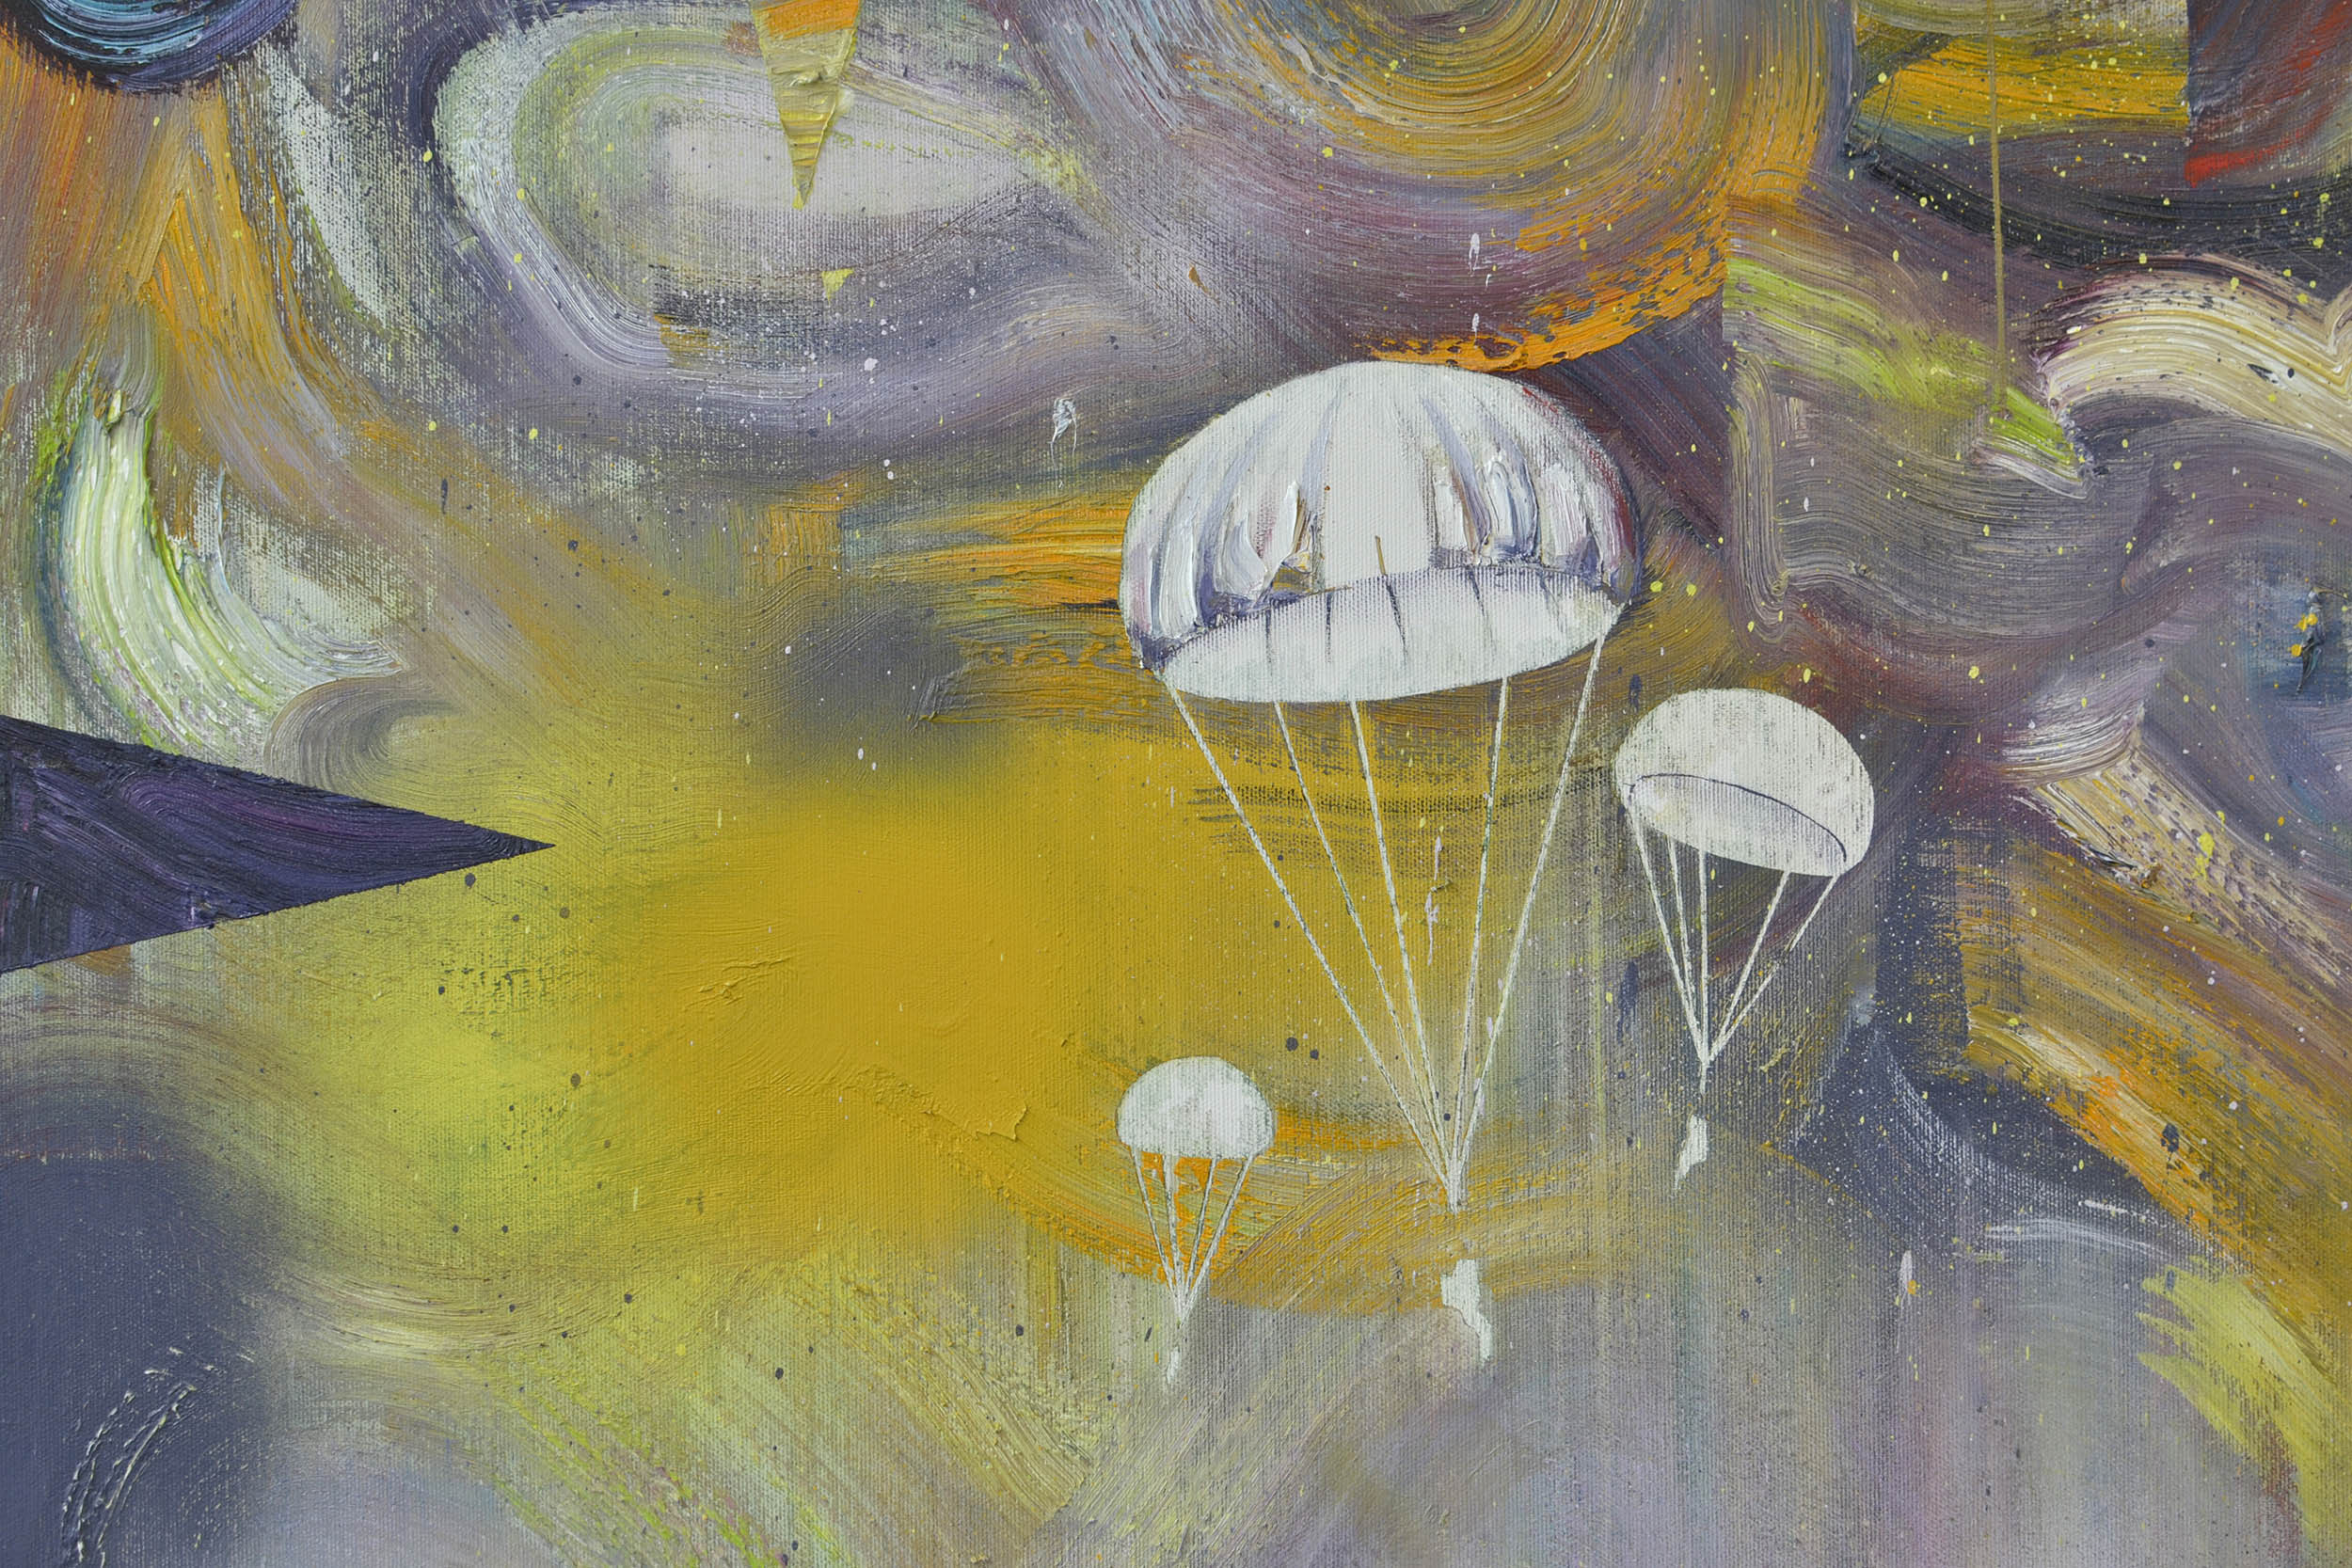   Landung (Detail)  oil on canvas 190 x 165 cm, 2016 